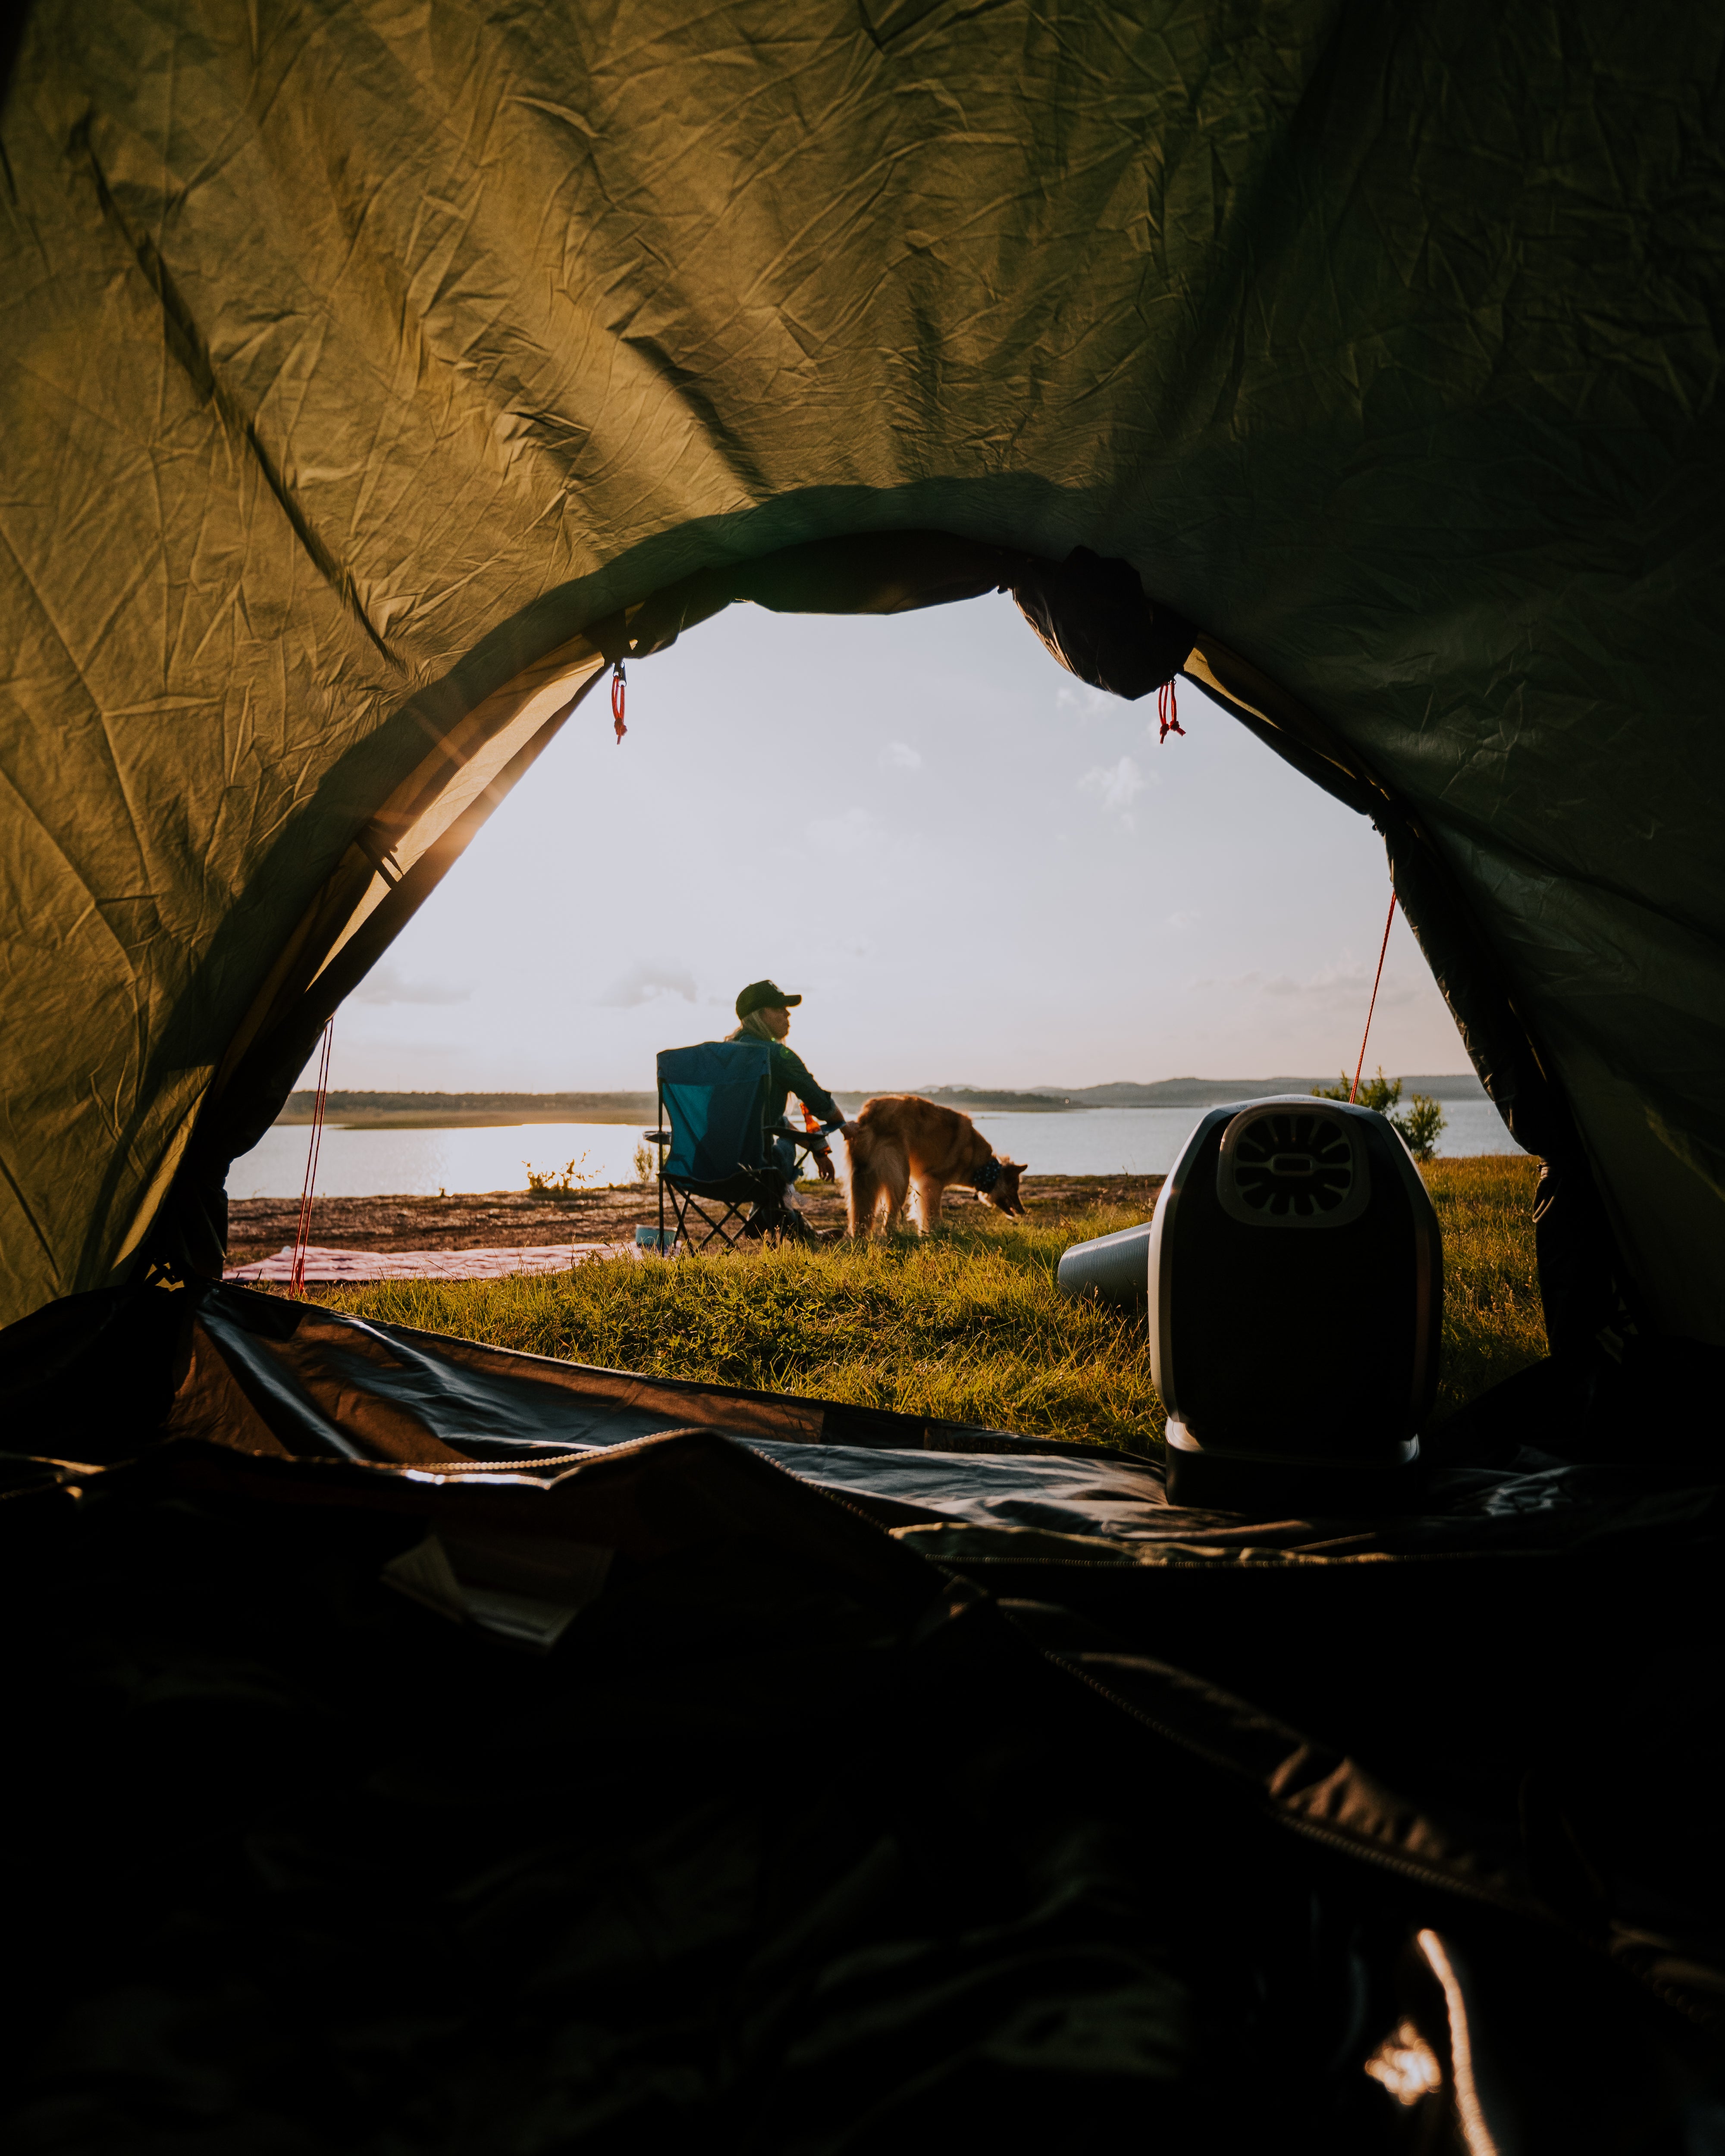 Duo Maxx | 3 Person Dome Tent